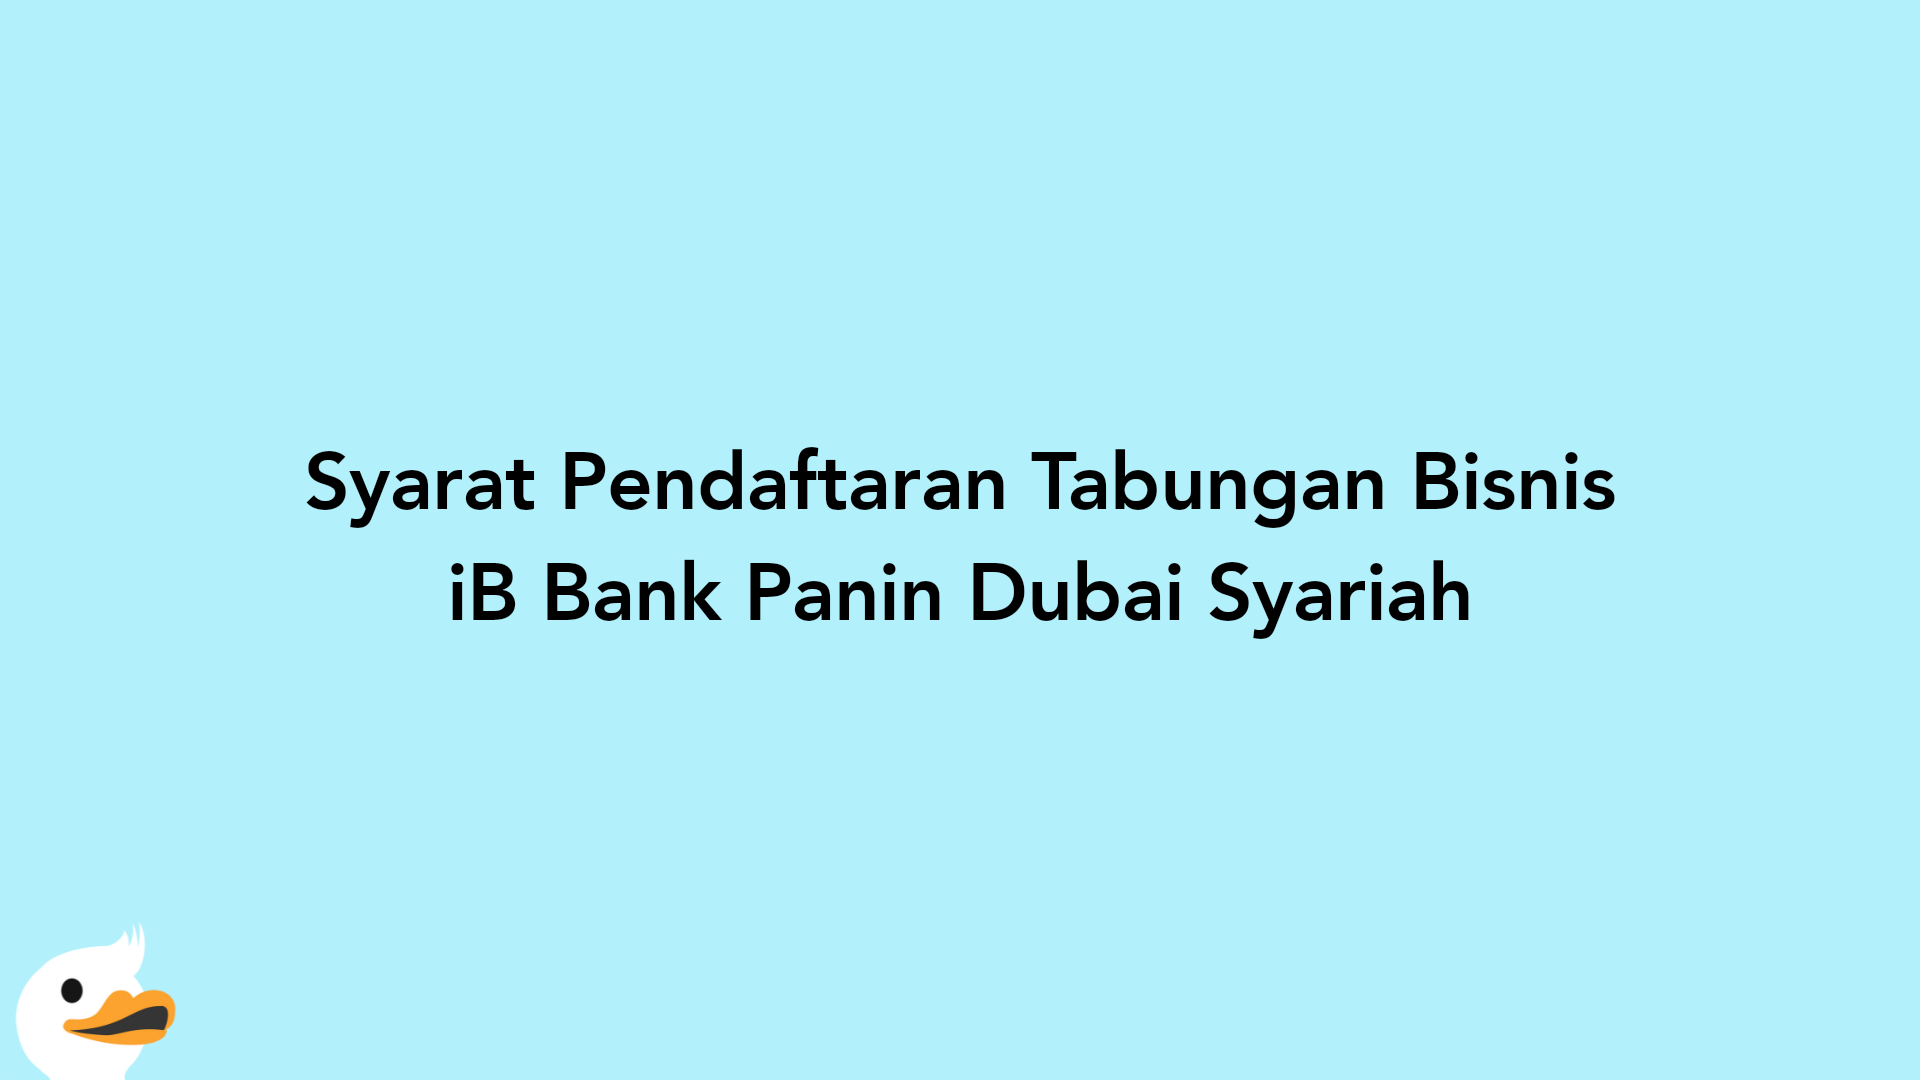 Syarat Pendaftaran Tabungan Bisnis iB Bank Panin Dubai Syariah